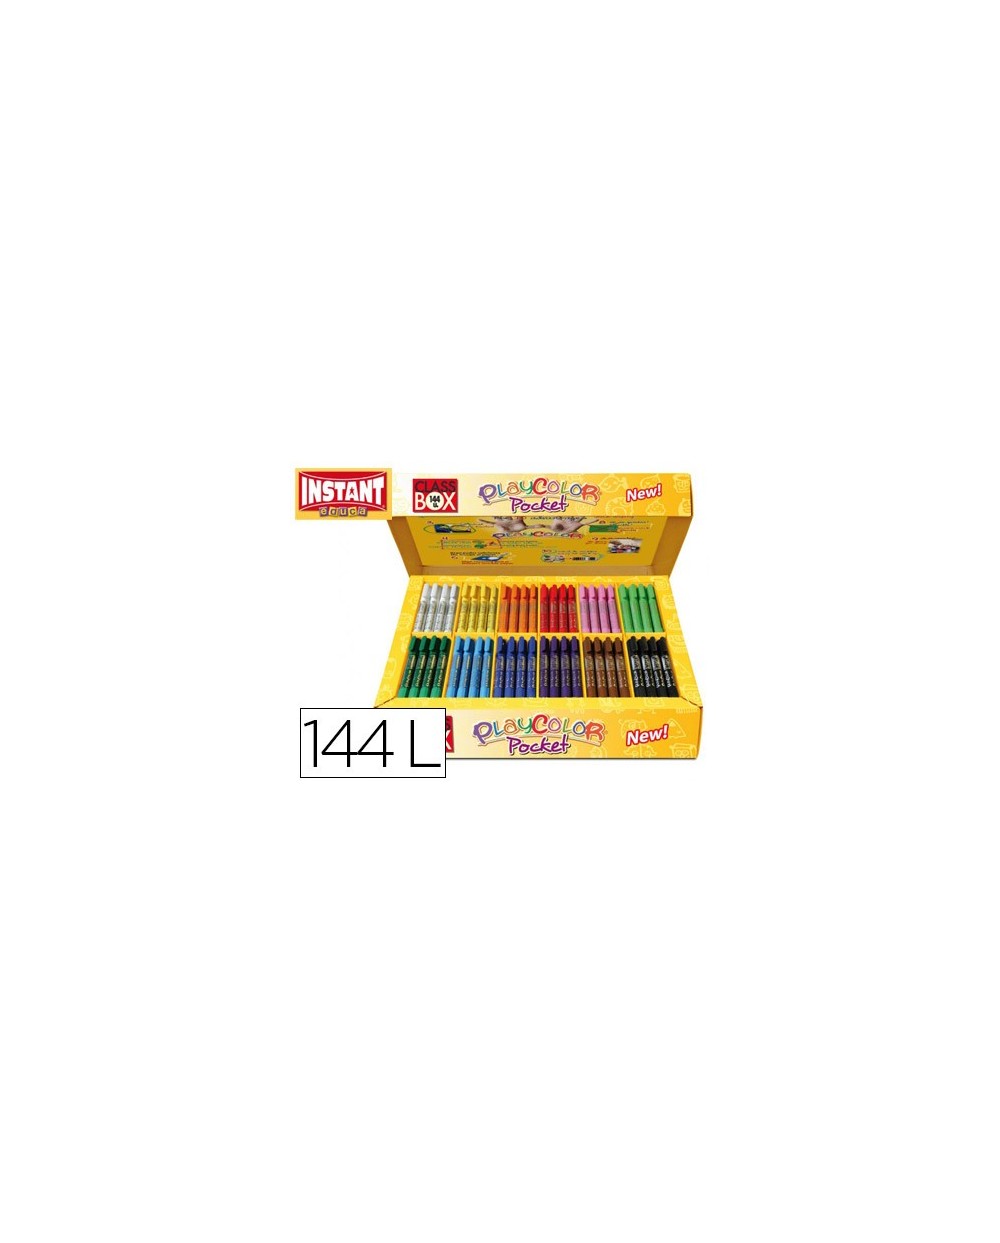 Tempera solida en barra playcolor pocket escolar caja de 144 unidades 12  colores surtidos